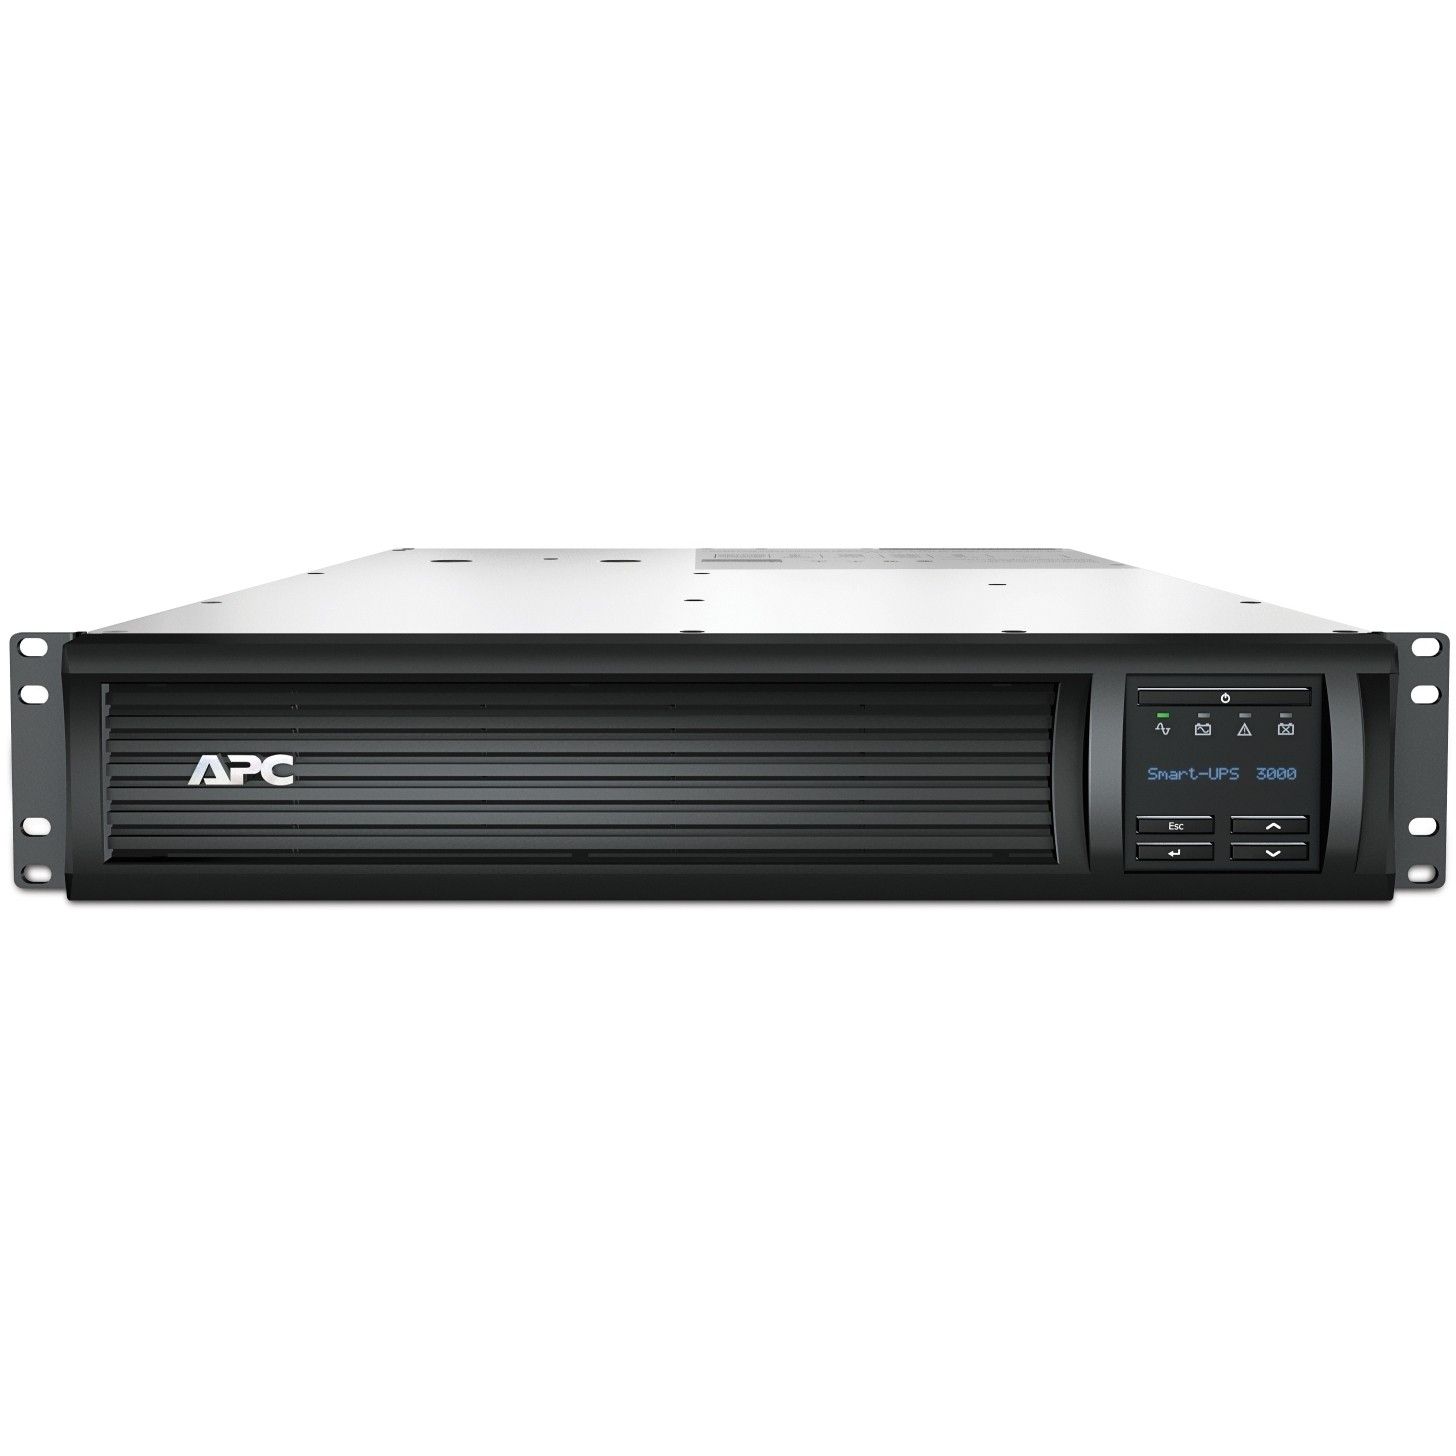 APC Smart-UPS 3000VA uninterruptible power supply (UPS) - SMT3000RMI2UNC